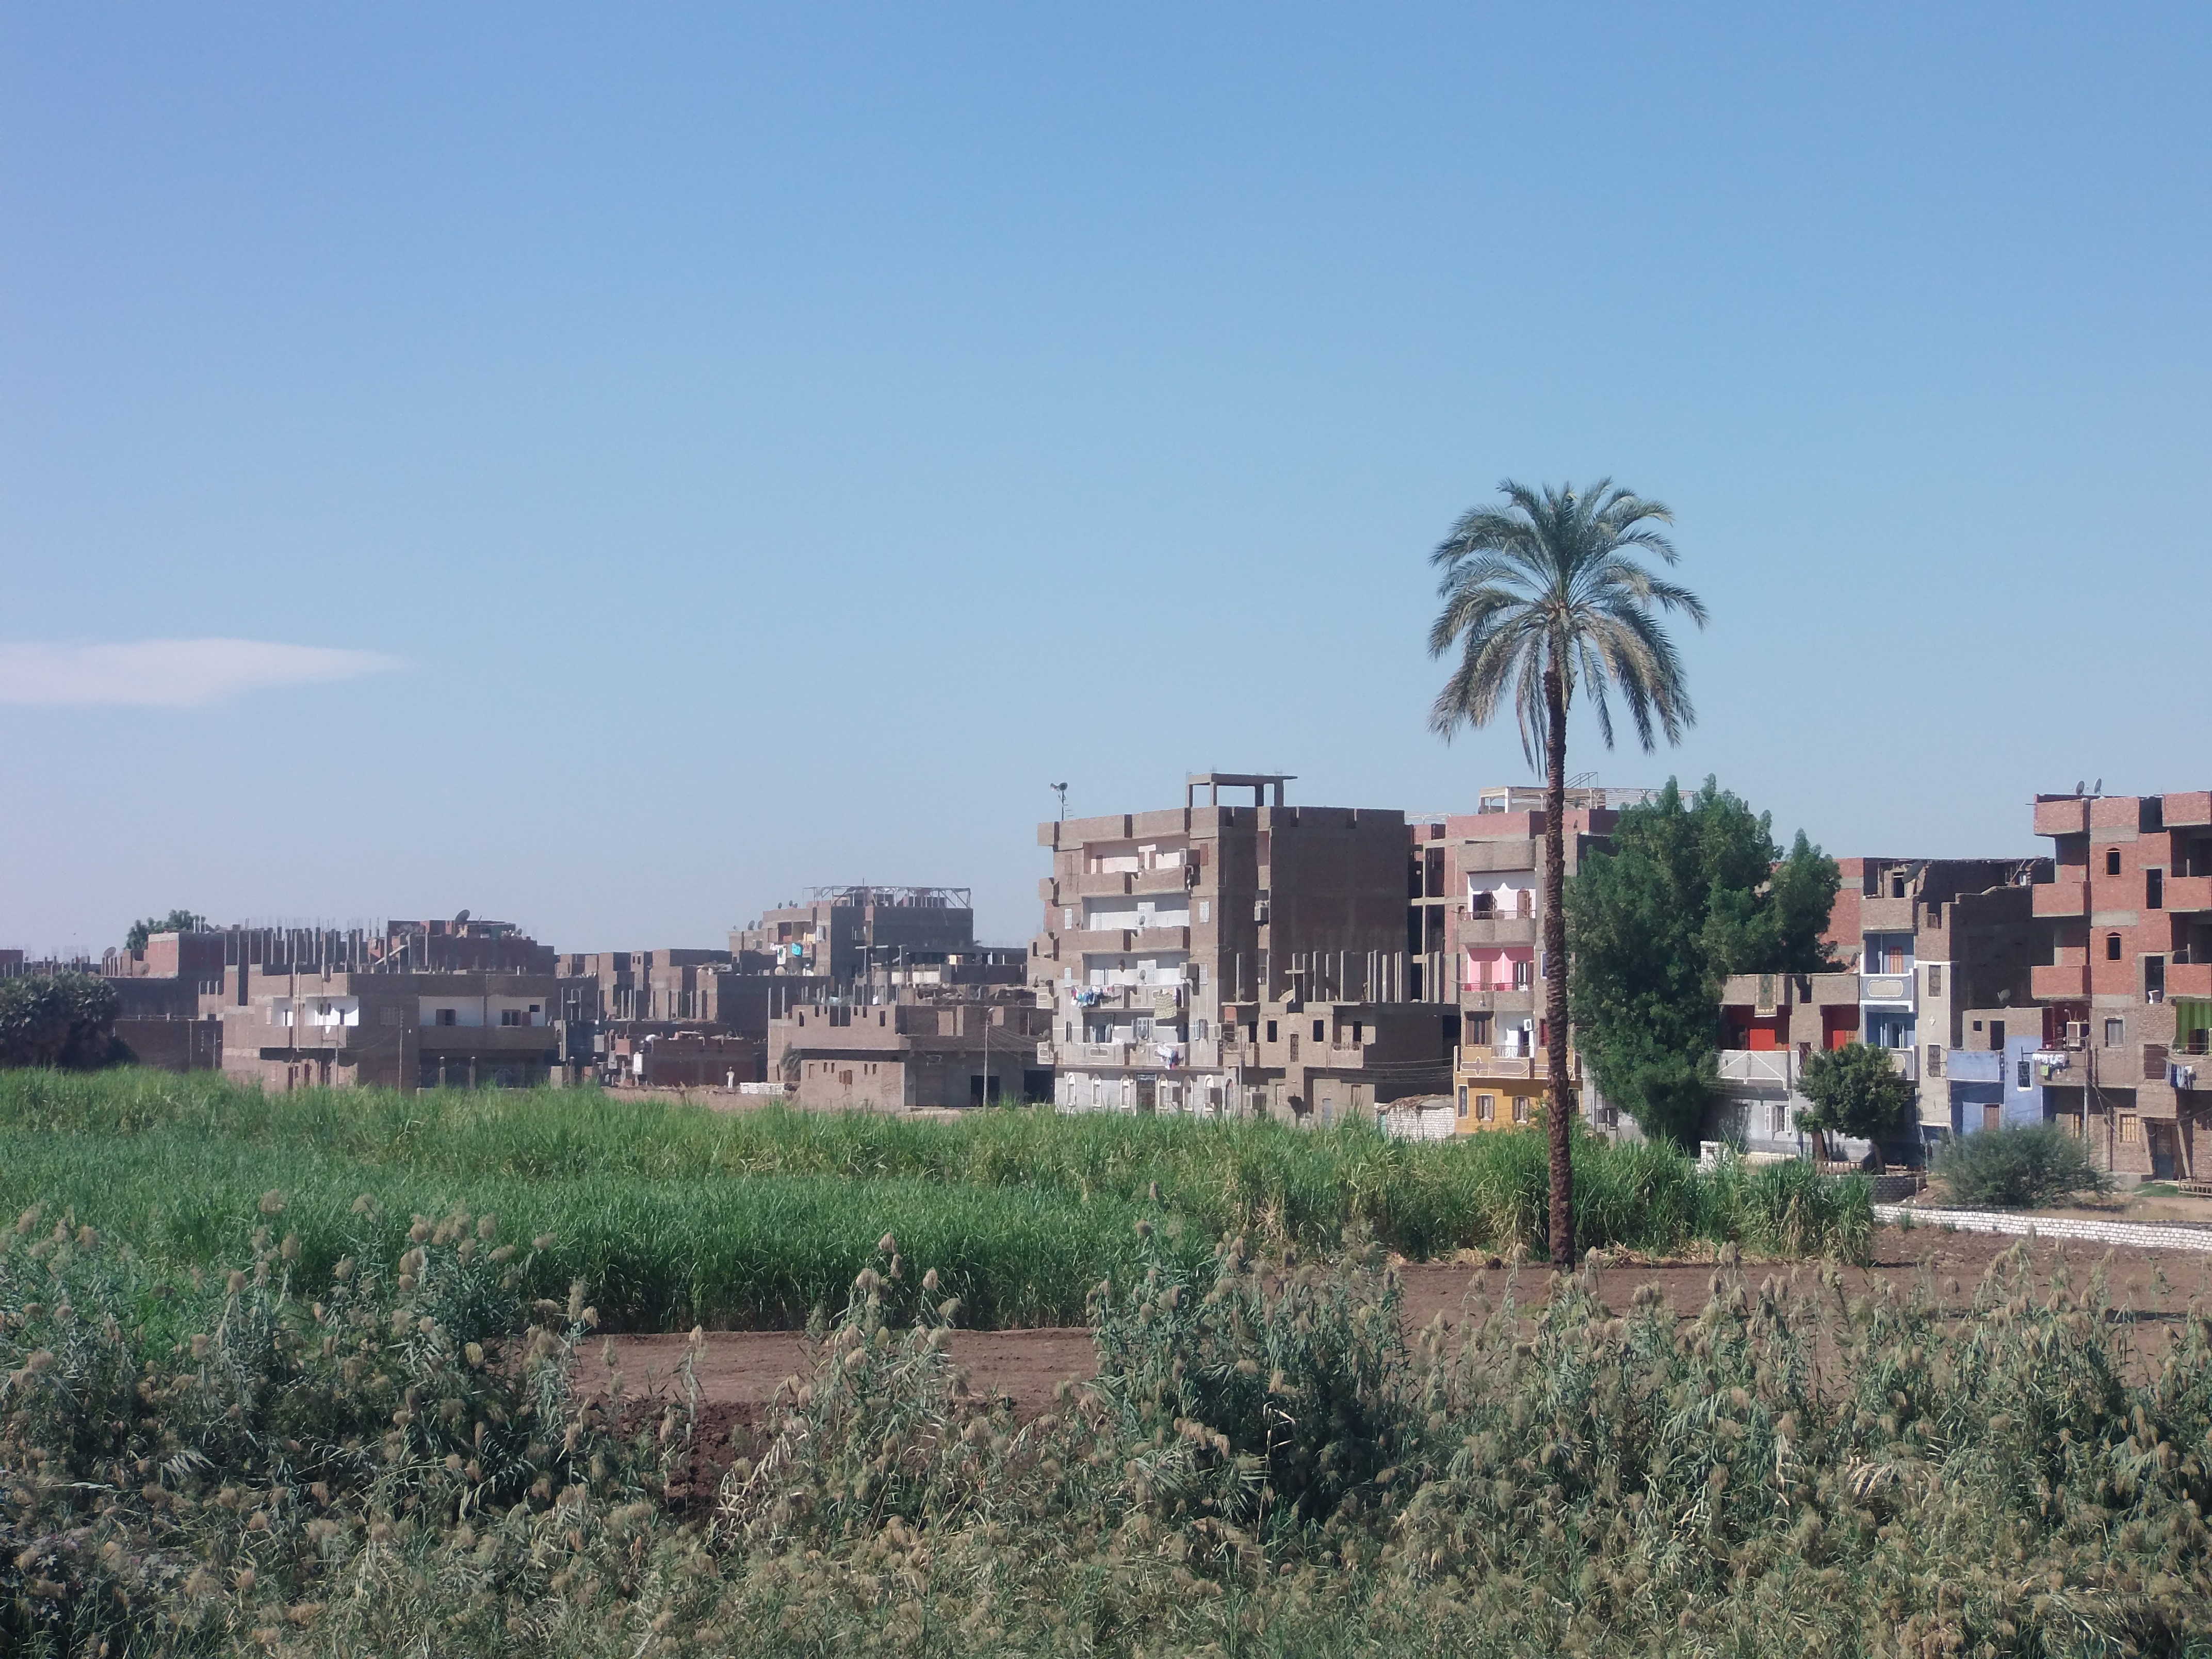 Häuser und Zuckerrohrfeld in Ägypten